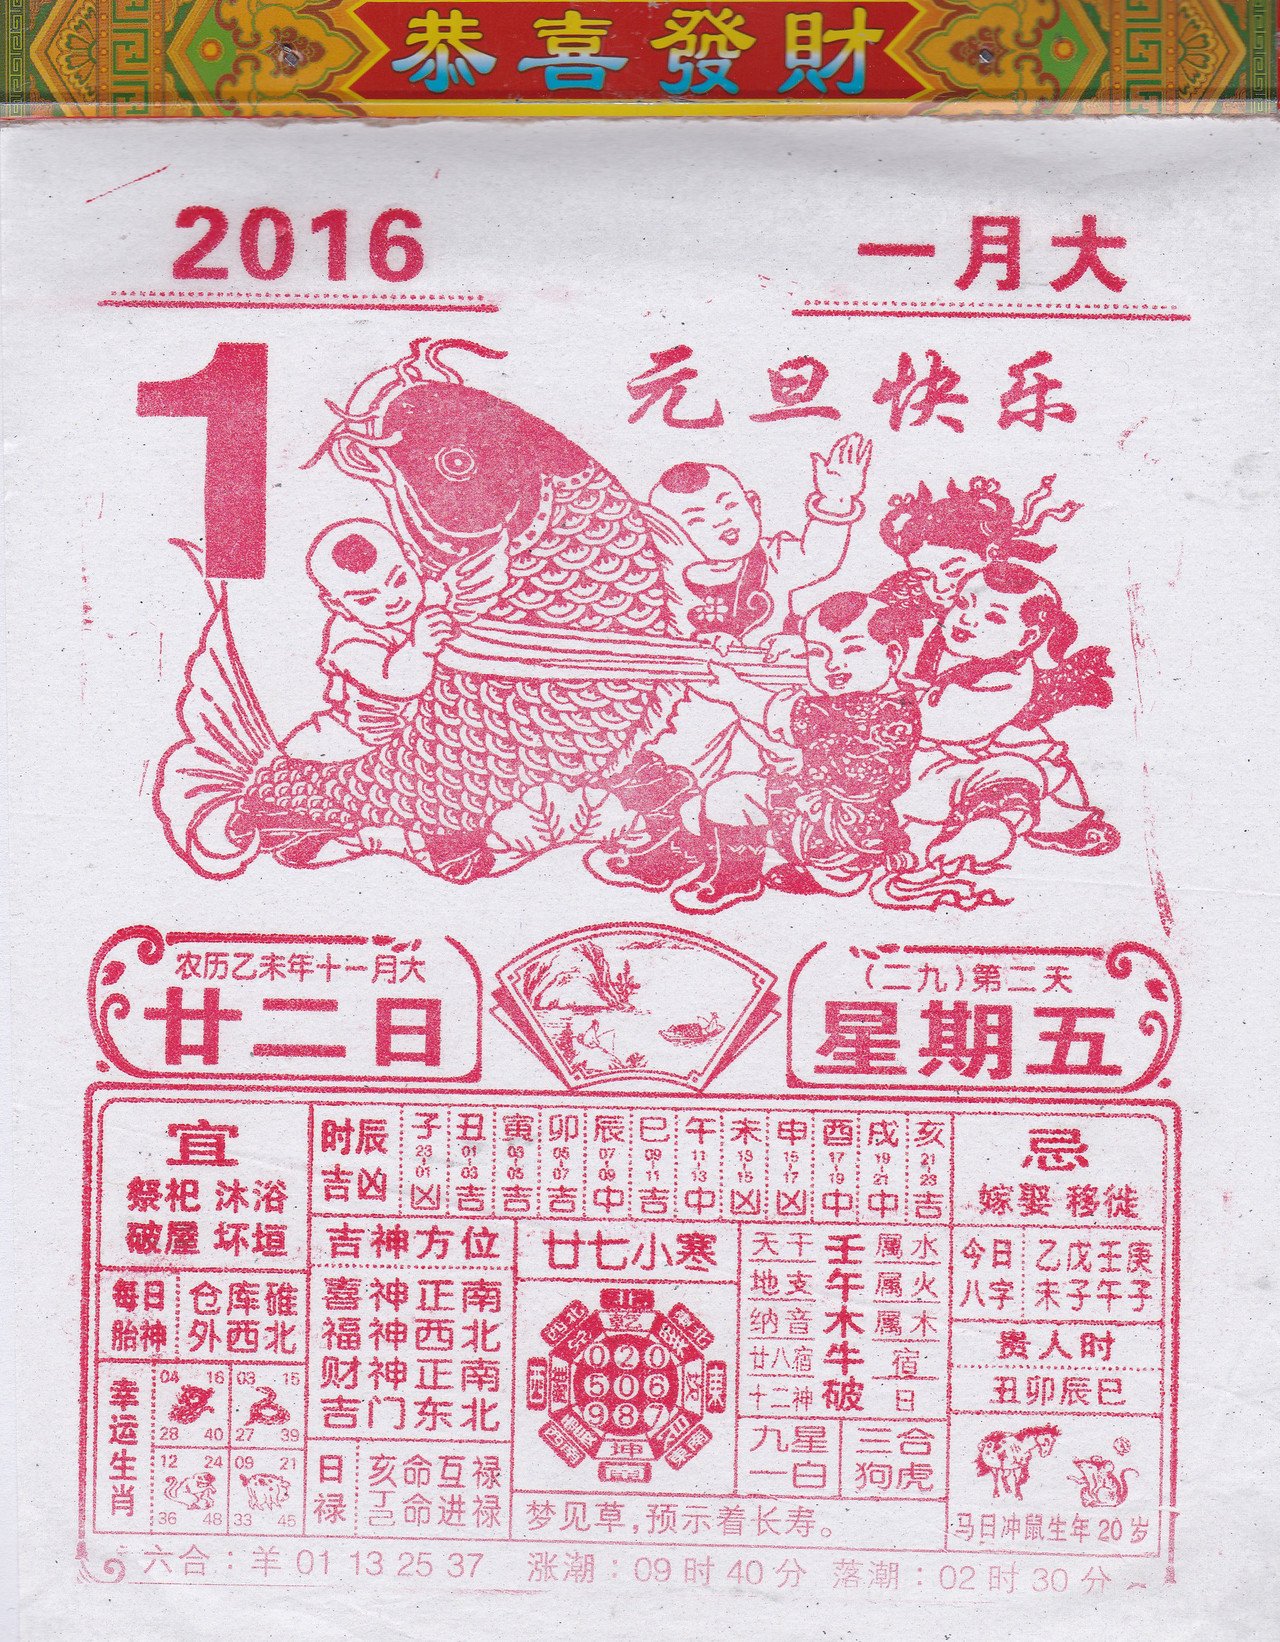 中国の日めくりカレンダーを購入。今日、していい事、悪い事、その他